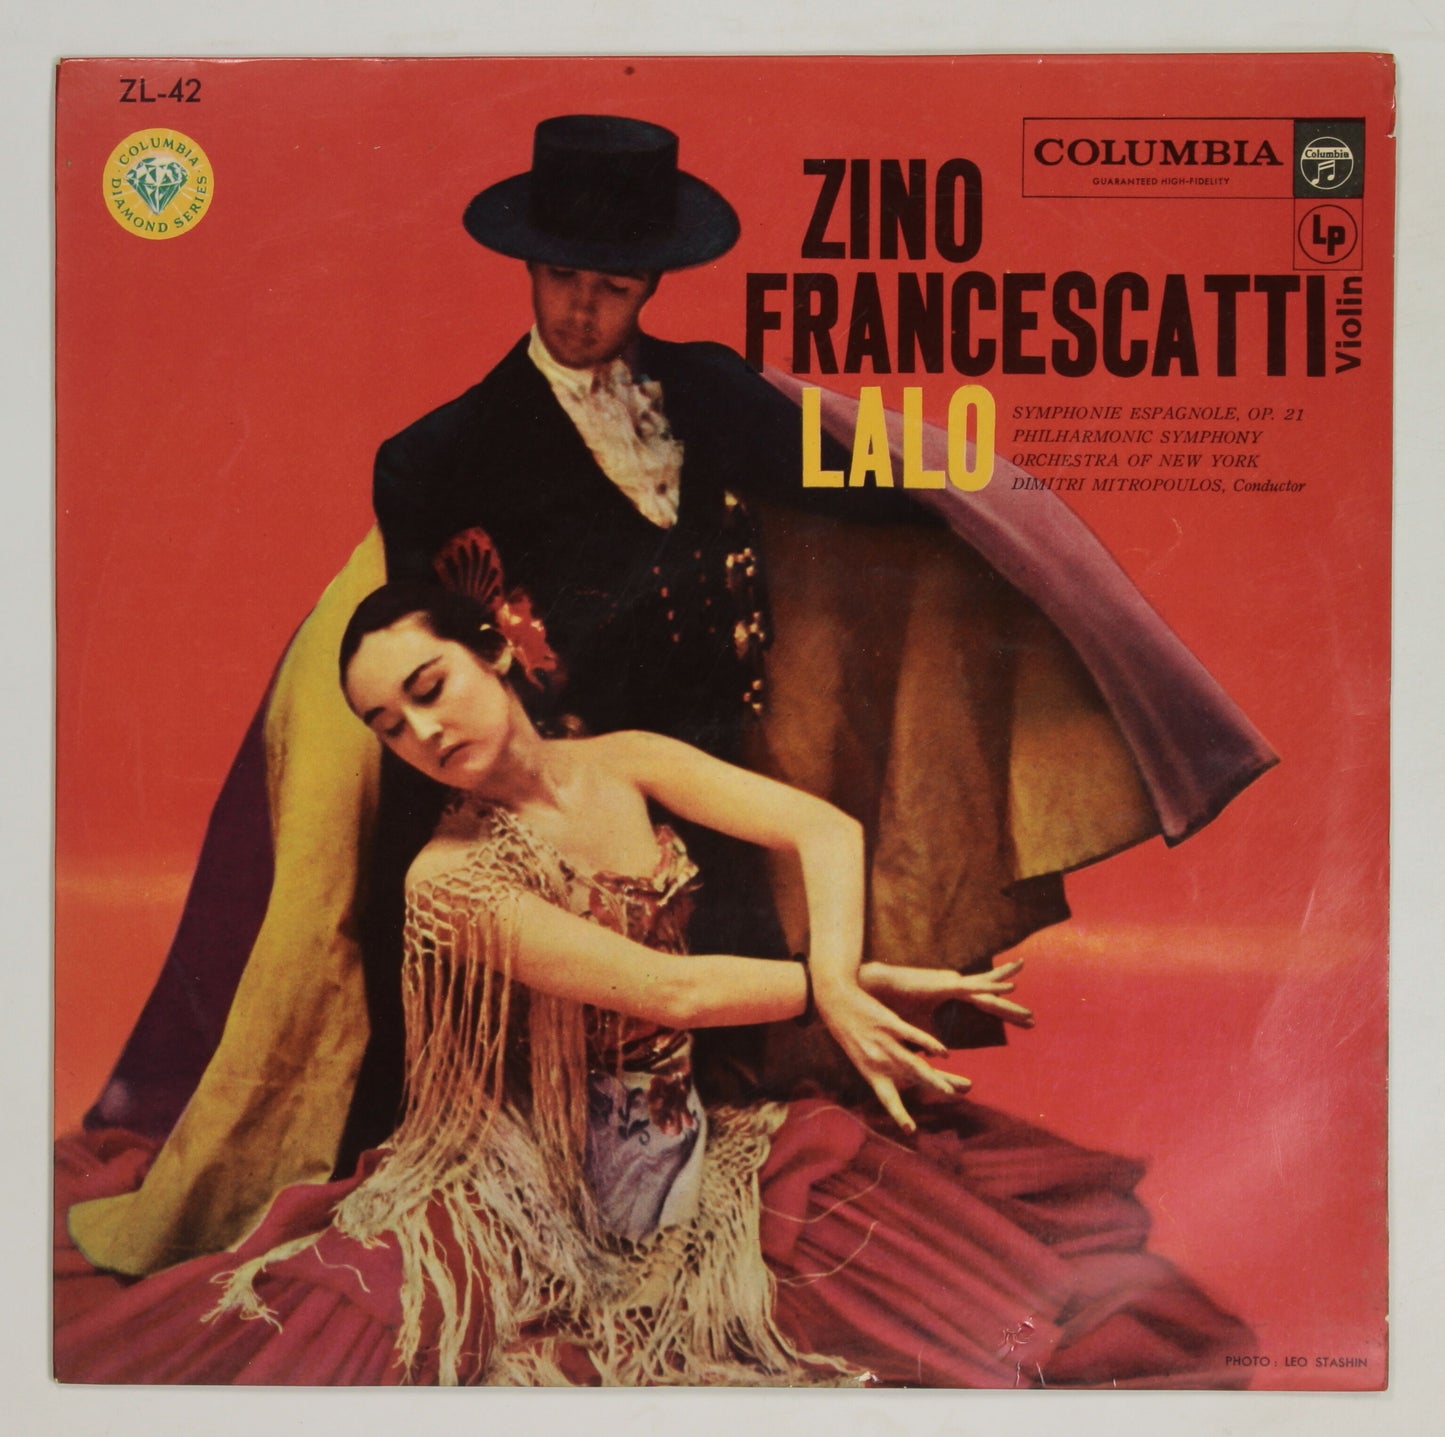 ジノ・フランチェスカッティ,ミトロプーロス / ラロ:スペイン交響曲